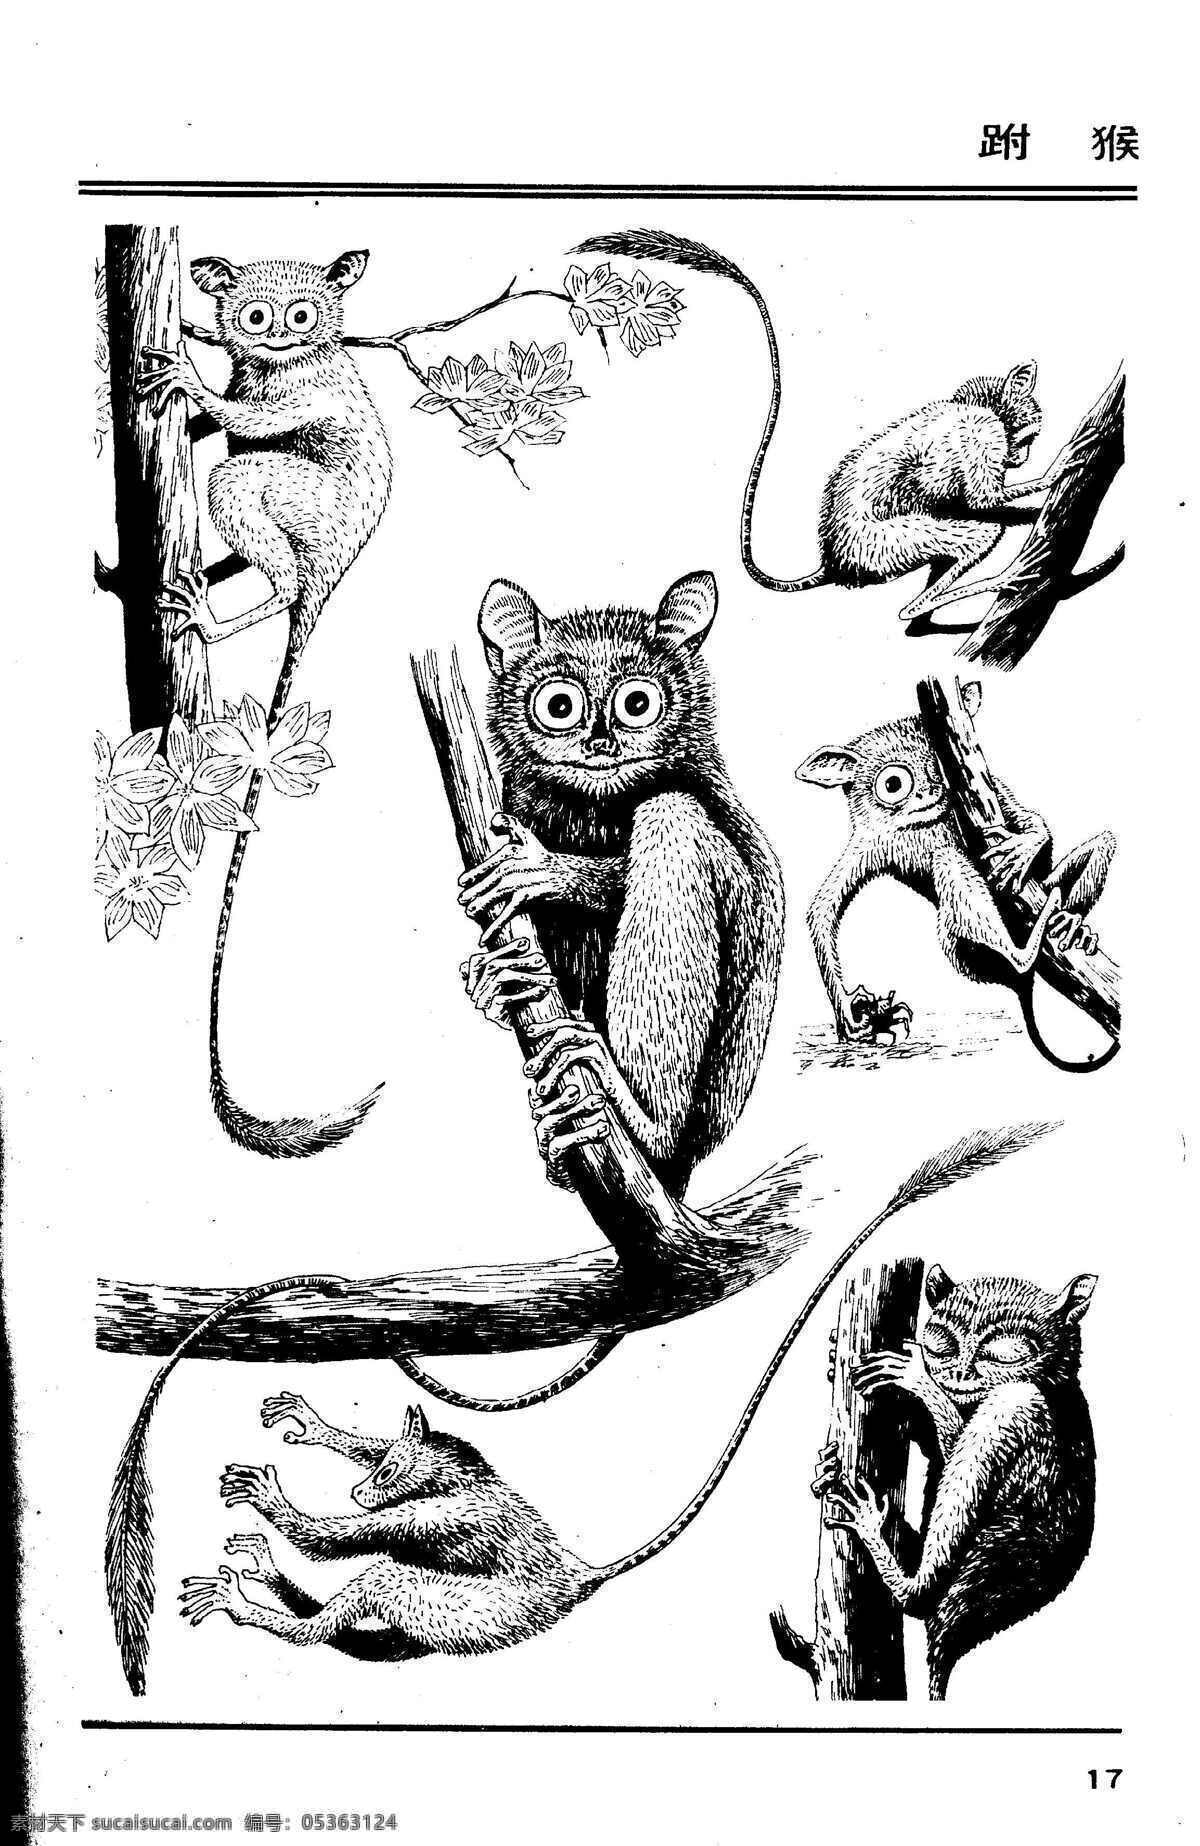 画兽图17 跗猴 百兽 兽 家禽 猛兽 动物 白描 线描 绘画 美术 禽兽 野生动物 画兽谱 画兽图 猴 猴子 生物世界 设计图库